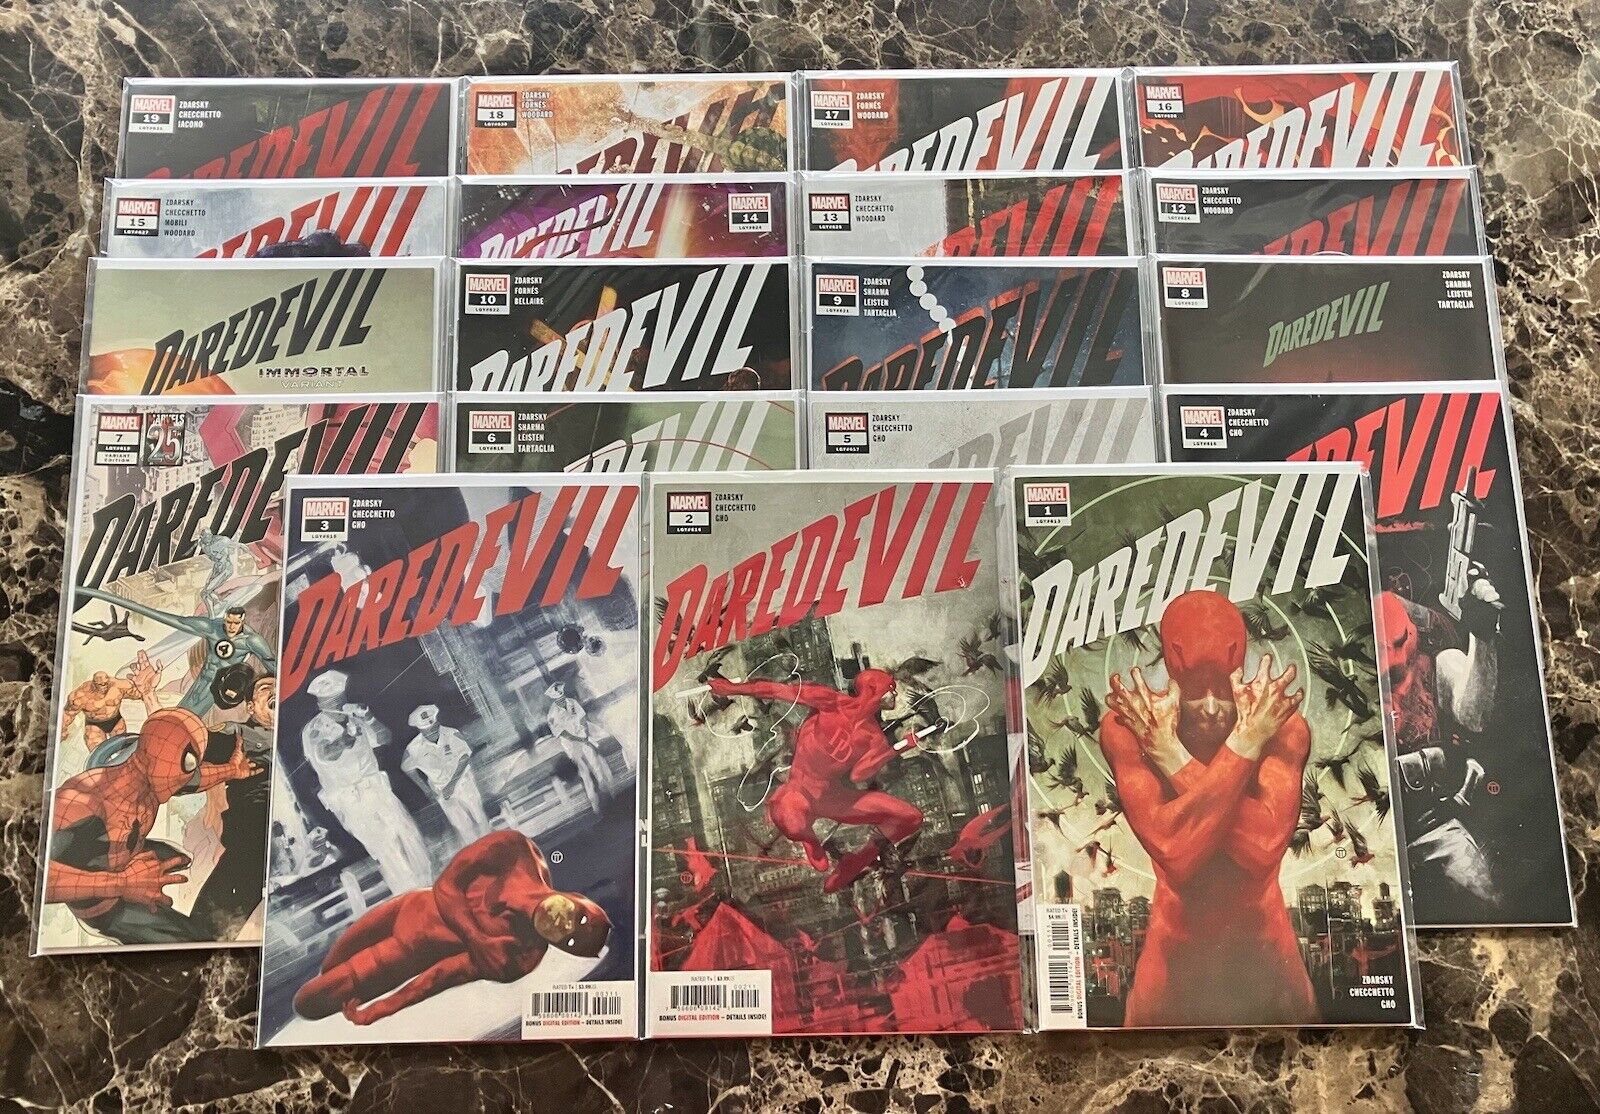 Daredevil 1 - 19 + Annual + Variants Marvel Comics 2019 Zdarsky Full Run Echo